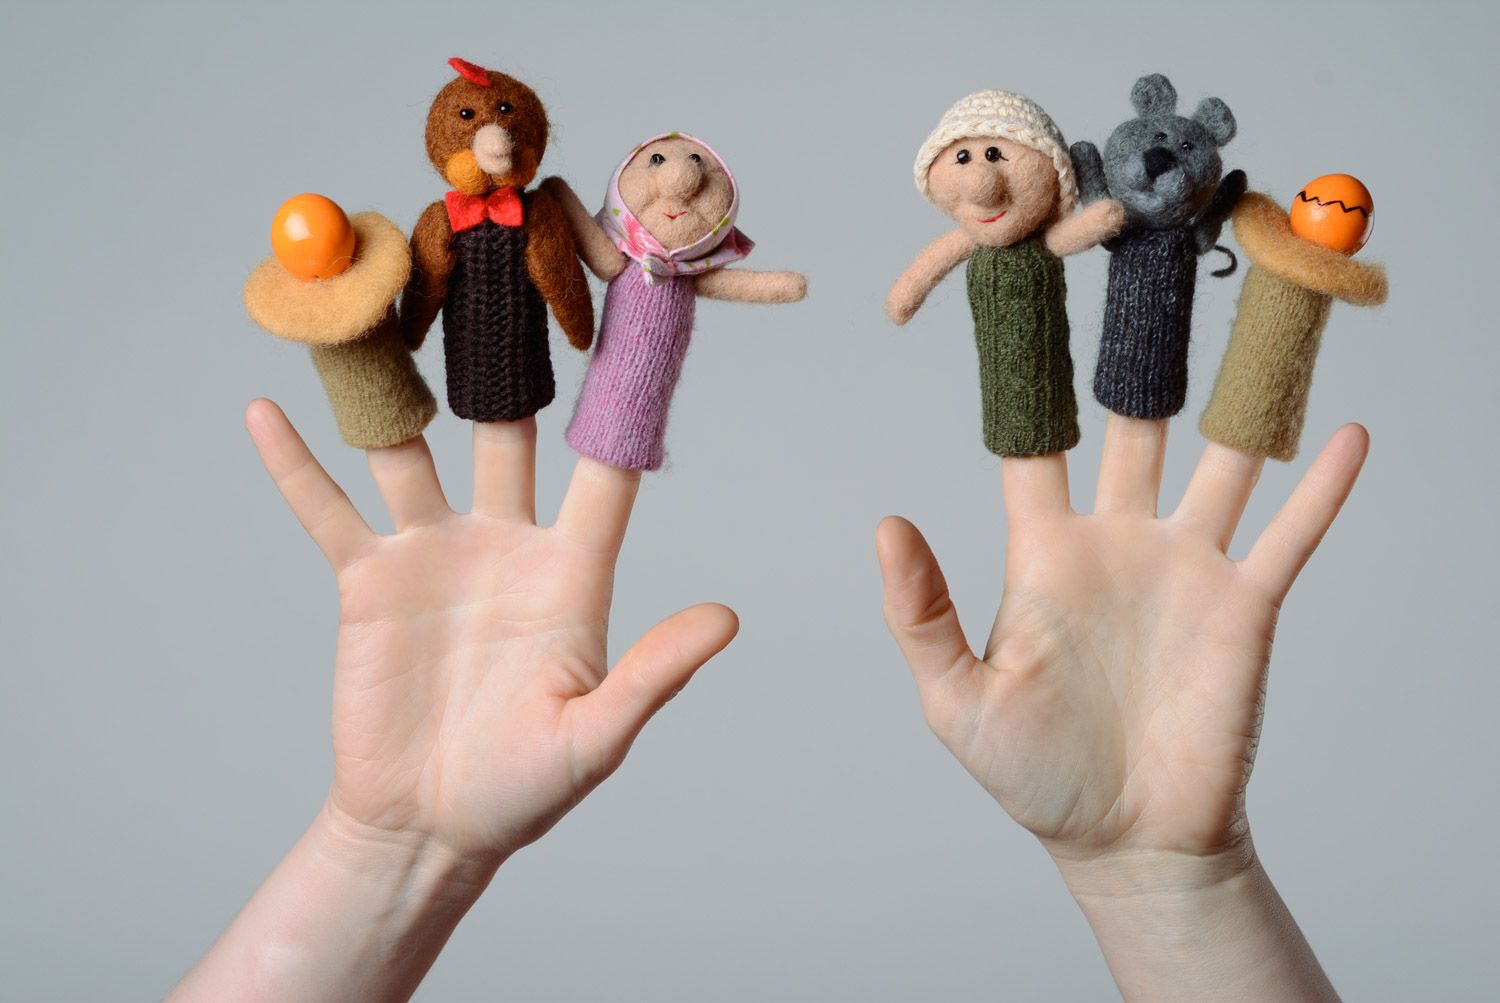 Handmade Finger Theater Set zum Märchen Das Hühnchen Rjaba aus 4 Figuren aus Wolle und 2 Eier foto 1